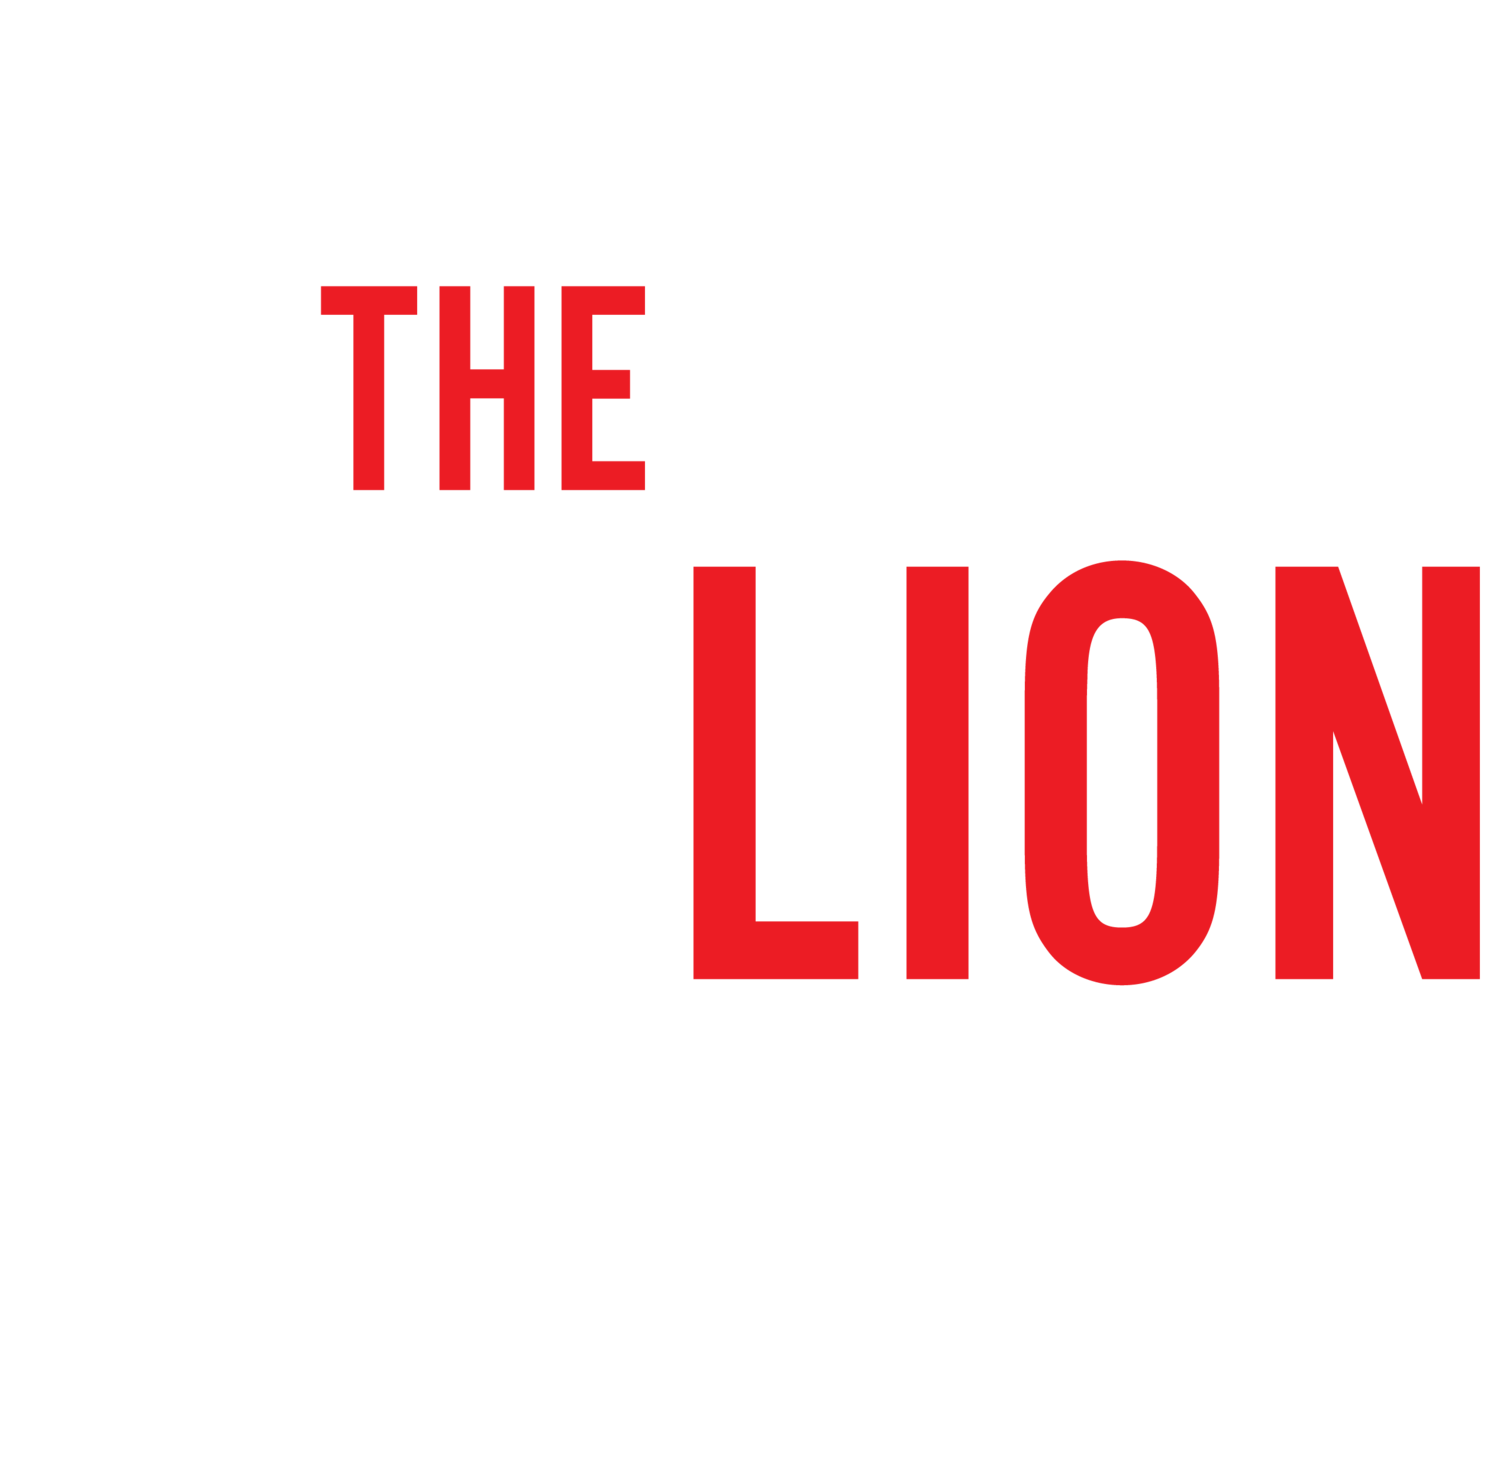 The £1.7 Million Haircut